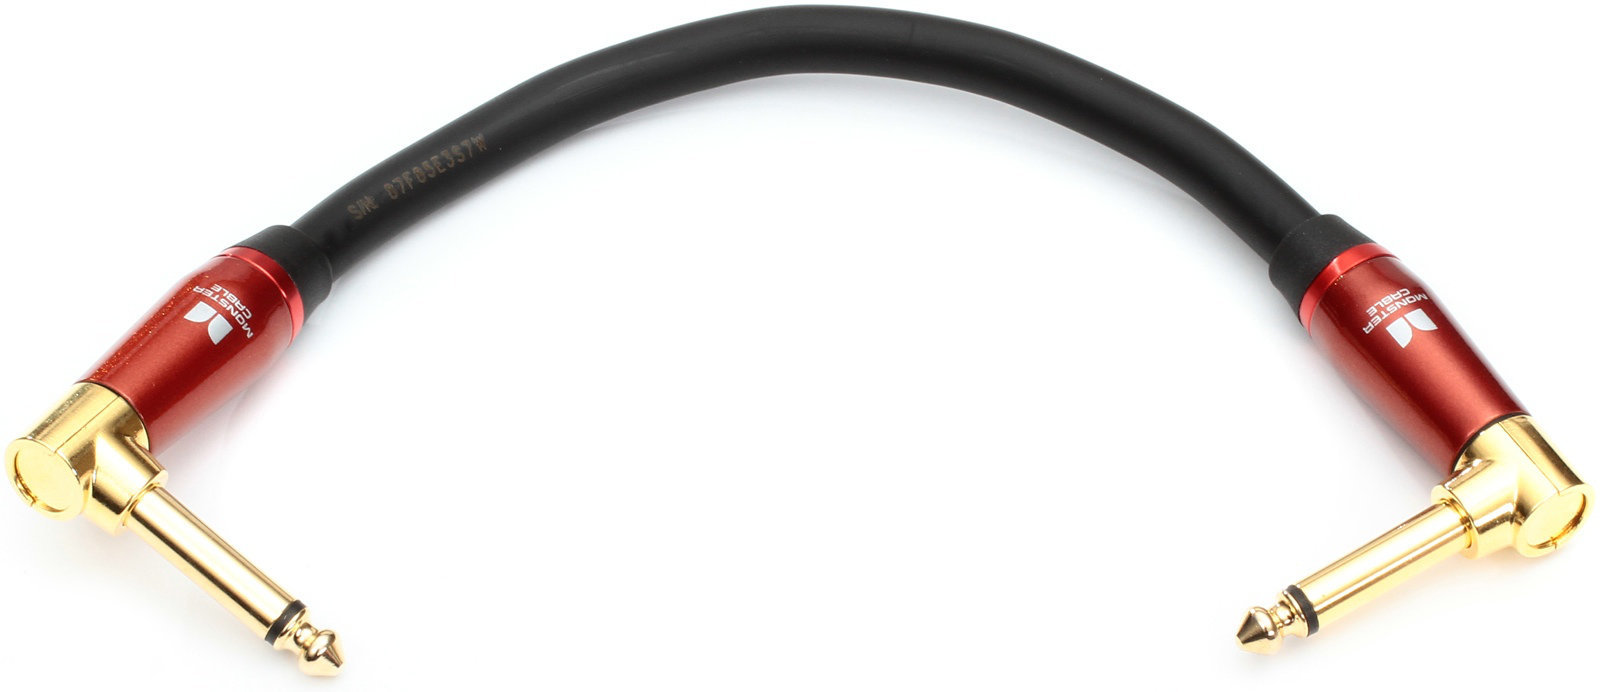 Povezovalni kabel, patch kabel Monster Cable Accoustic 0,75DA 0,2 m Črna 20 cm Kotni - Kotni